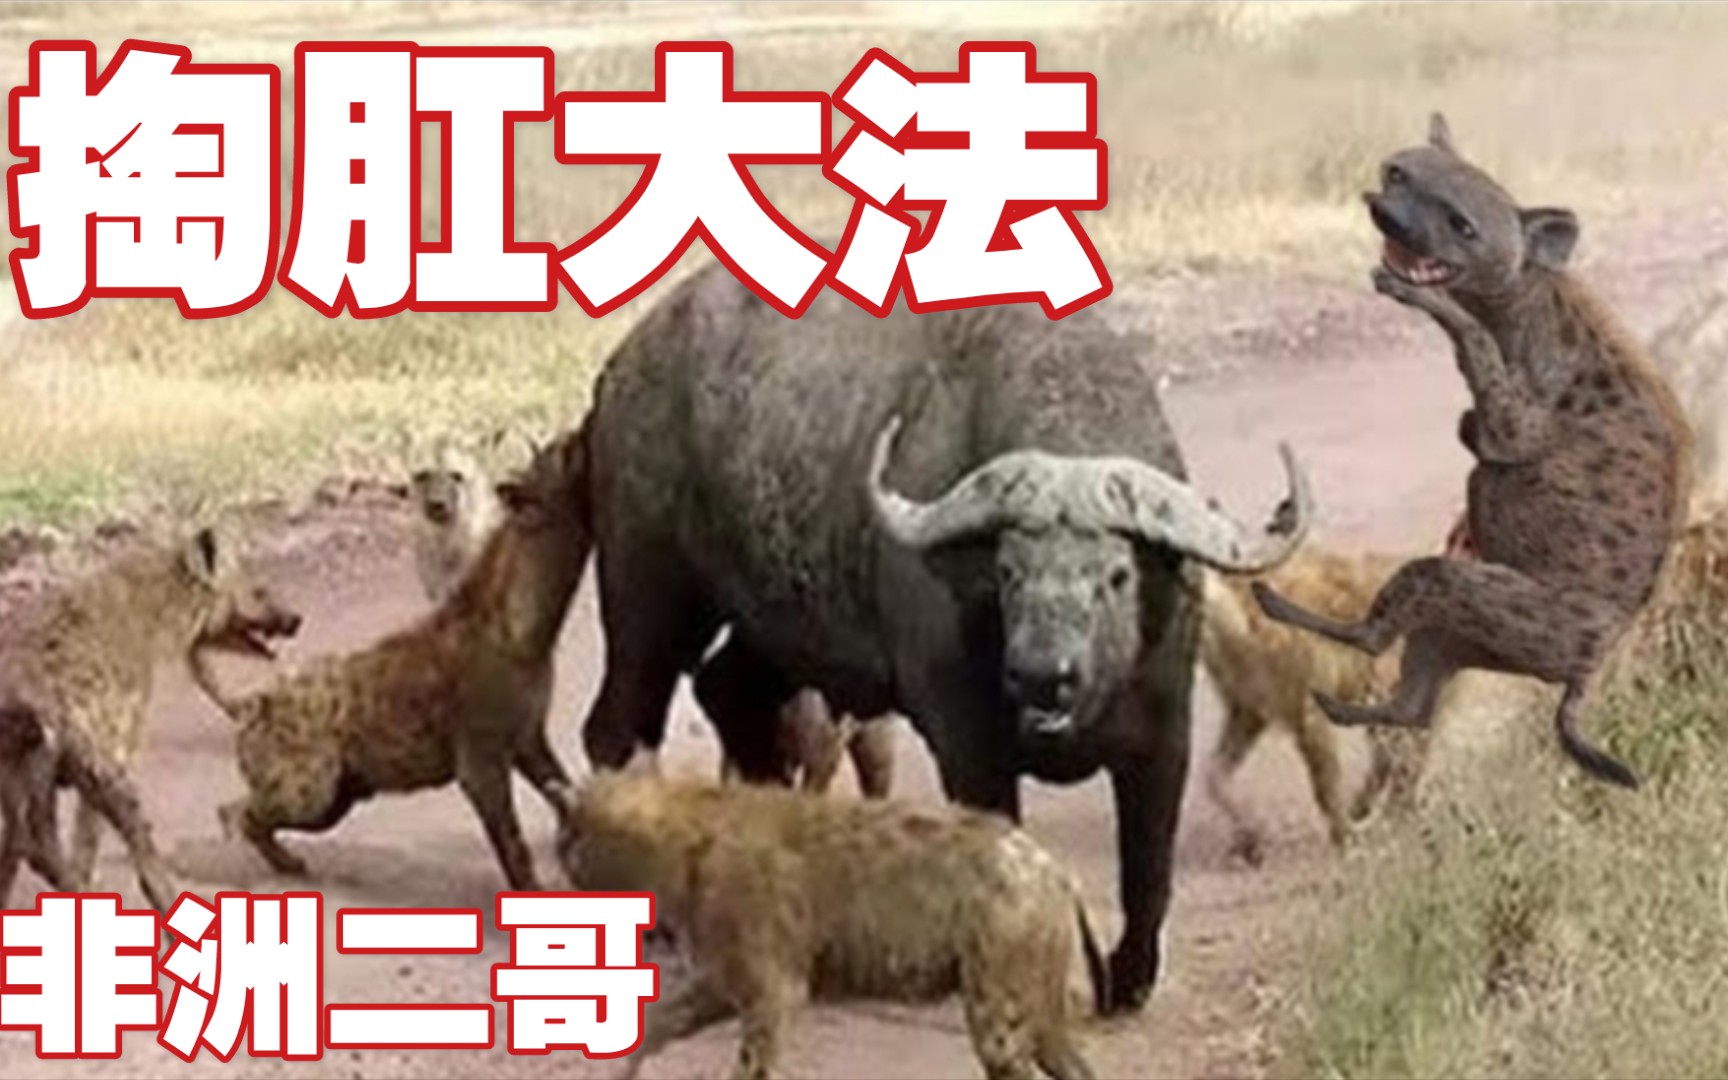 非洲二哥鬣狗:掏肛是我的看家本领,不服来战